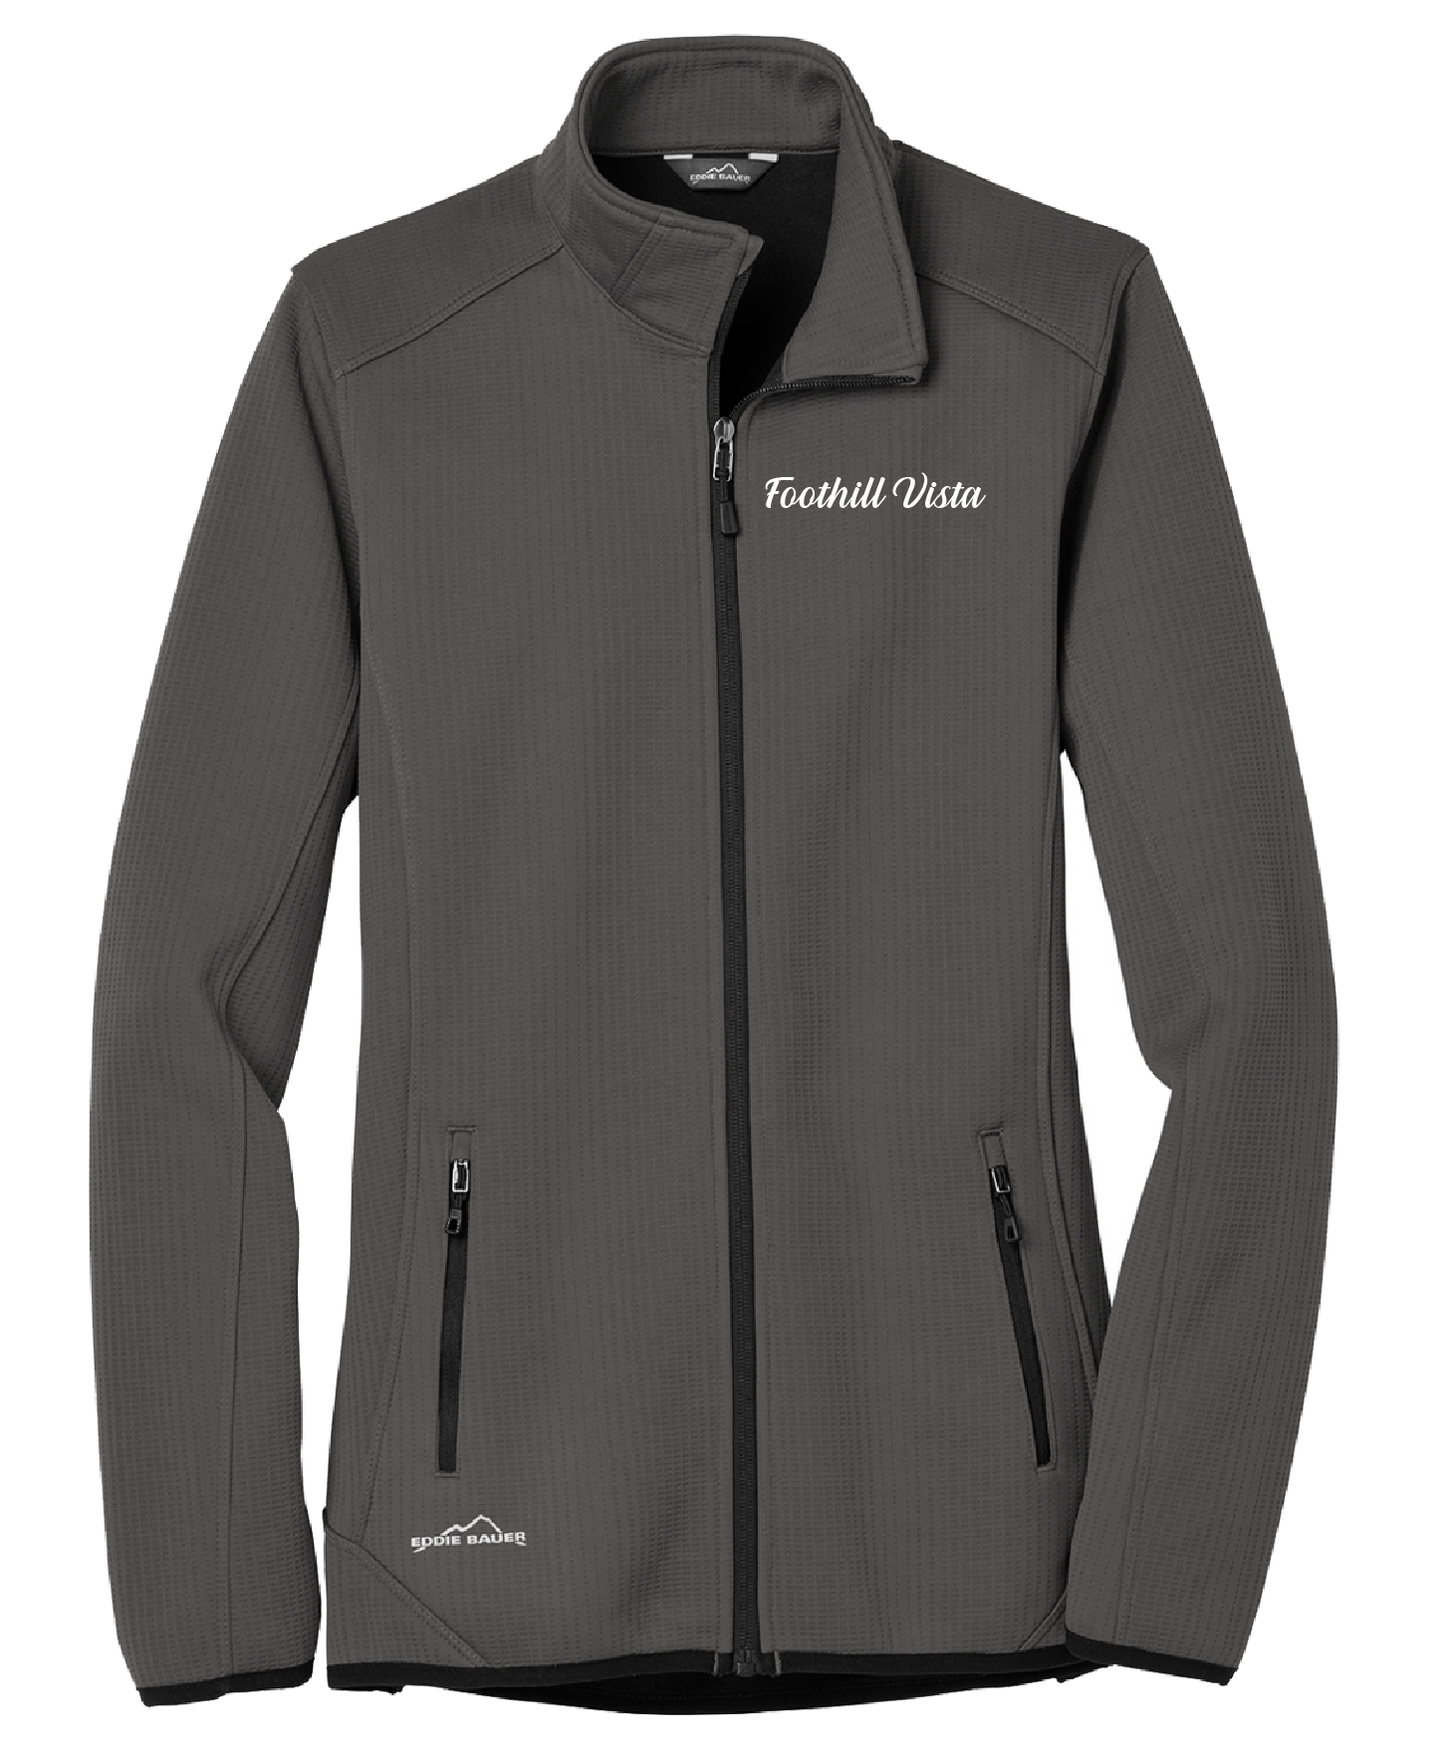 Foothill Vista - Ladies - Eddie Bauer ® Dash Full-Zip Fleece Jacket